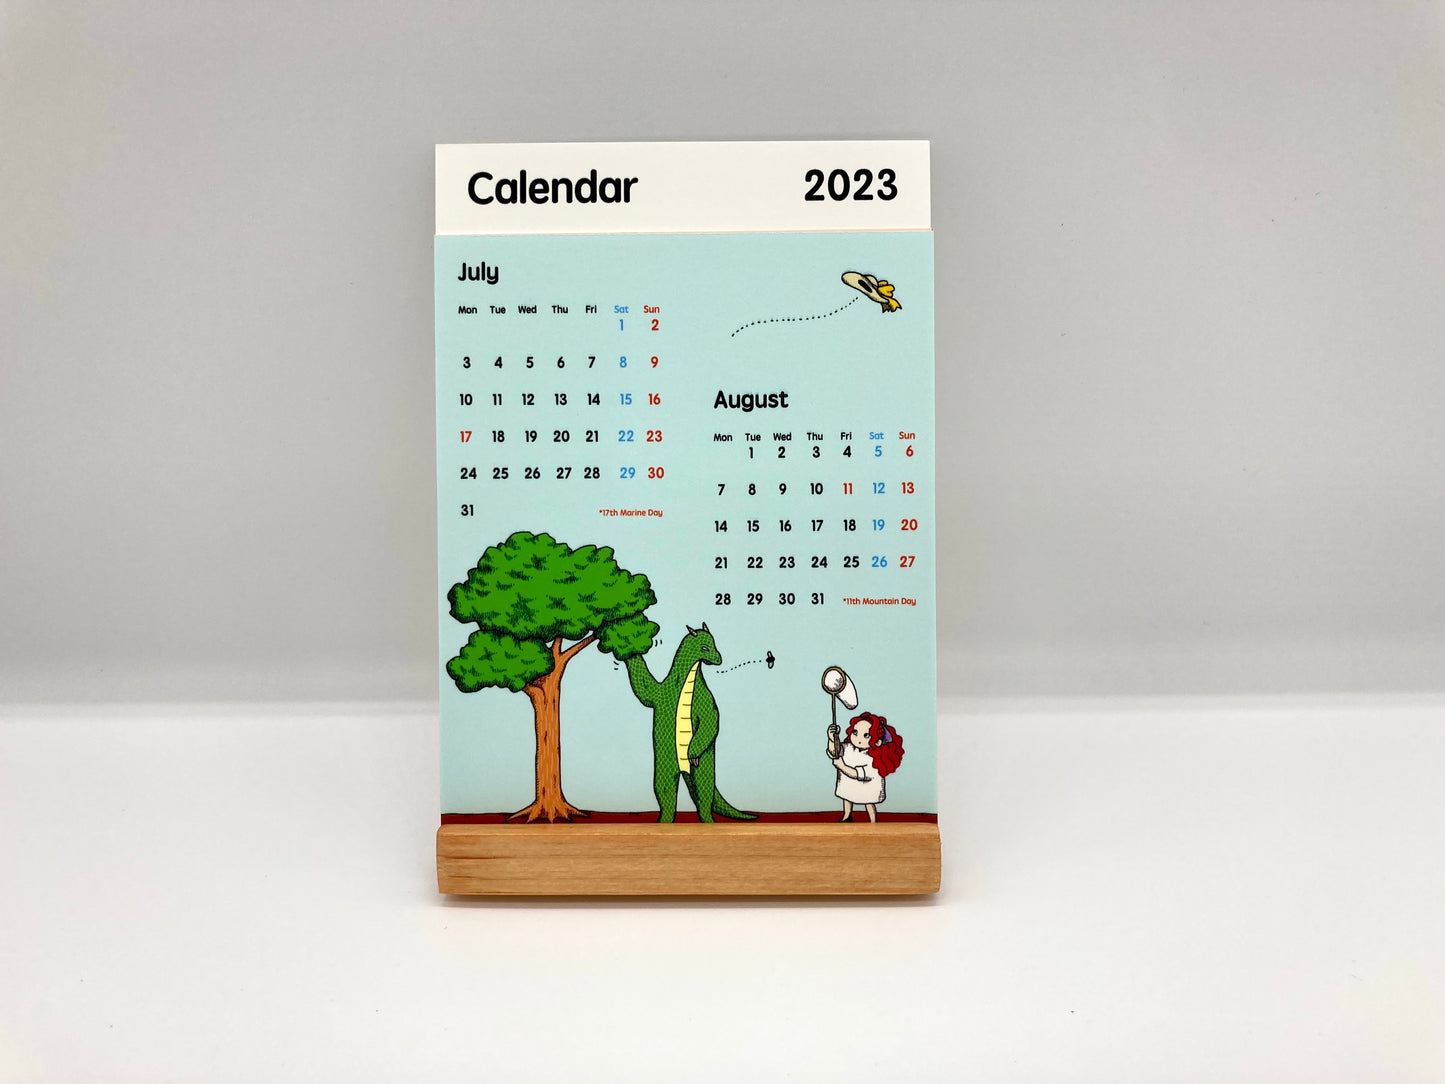 2023年カレンダー